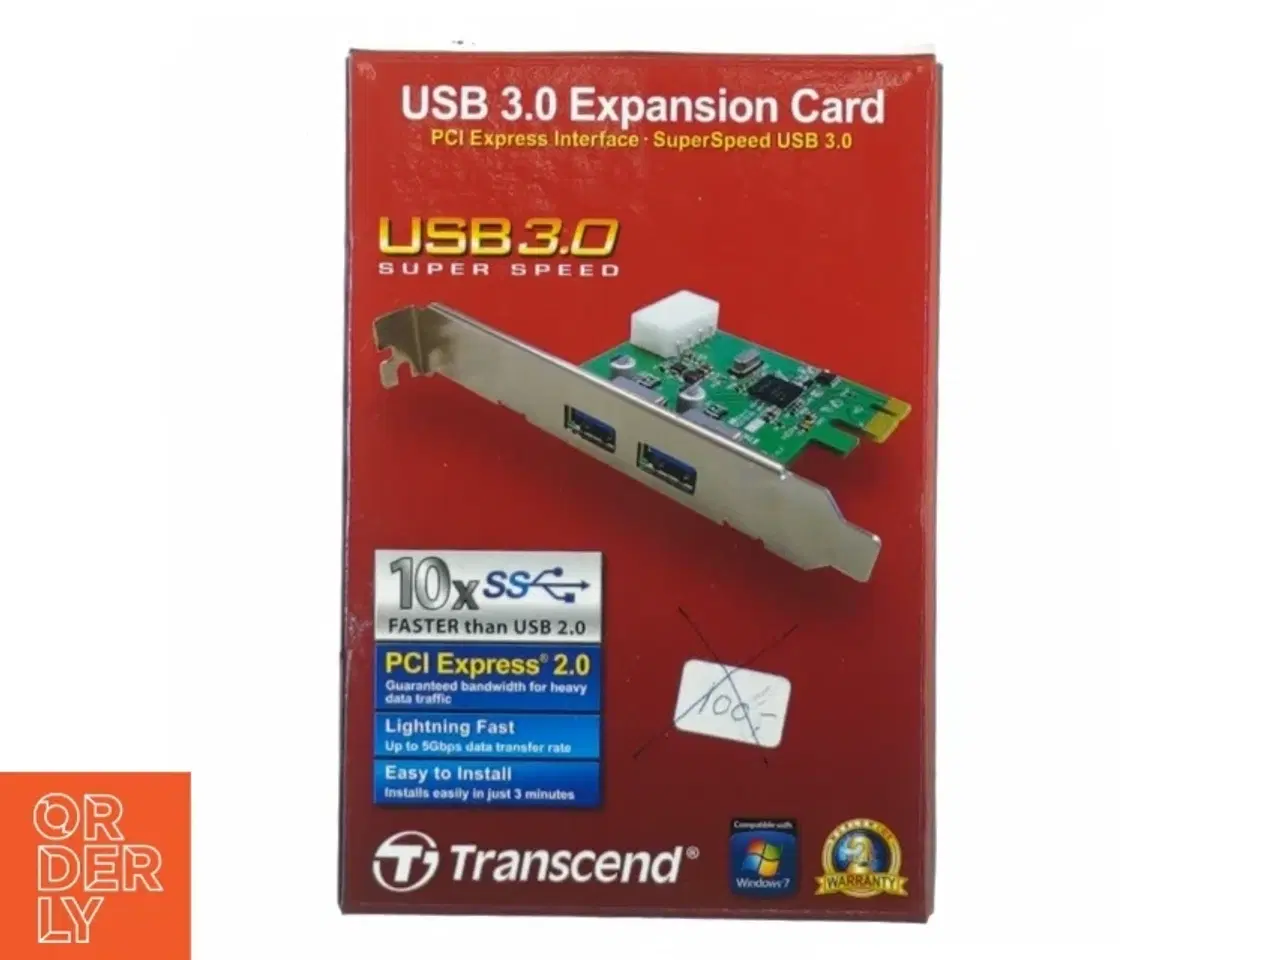 Billede 1 - USB 3.0 expansion card fra Transcend (str. 15 x 10 cm)